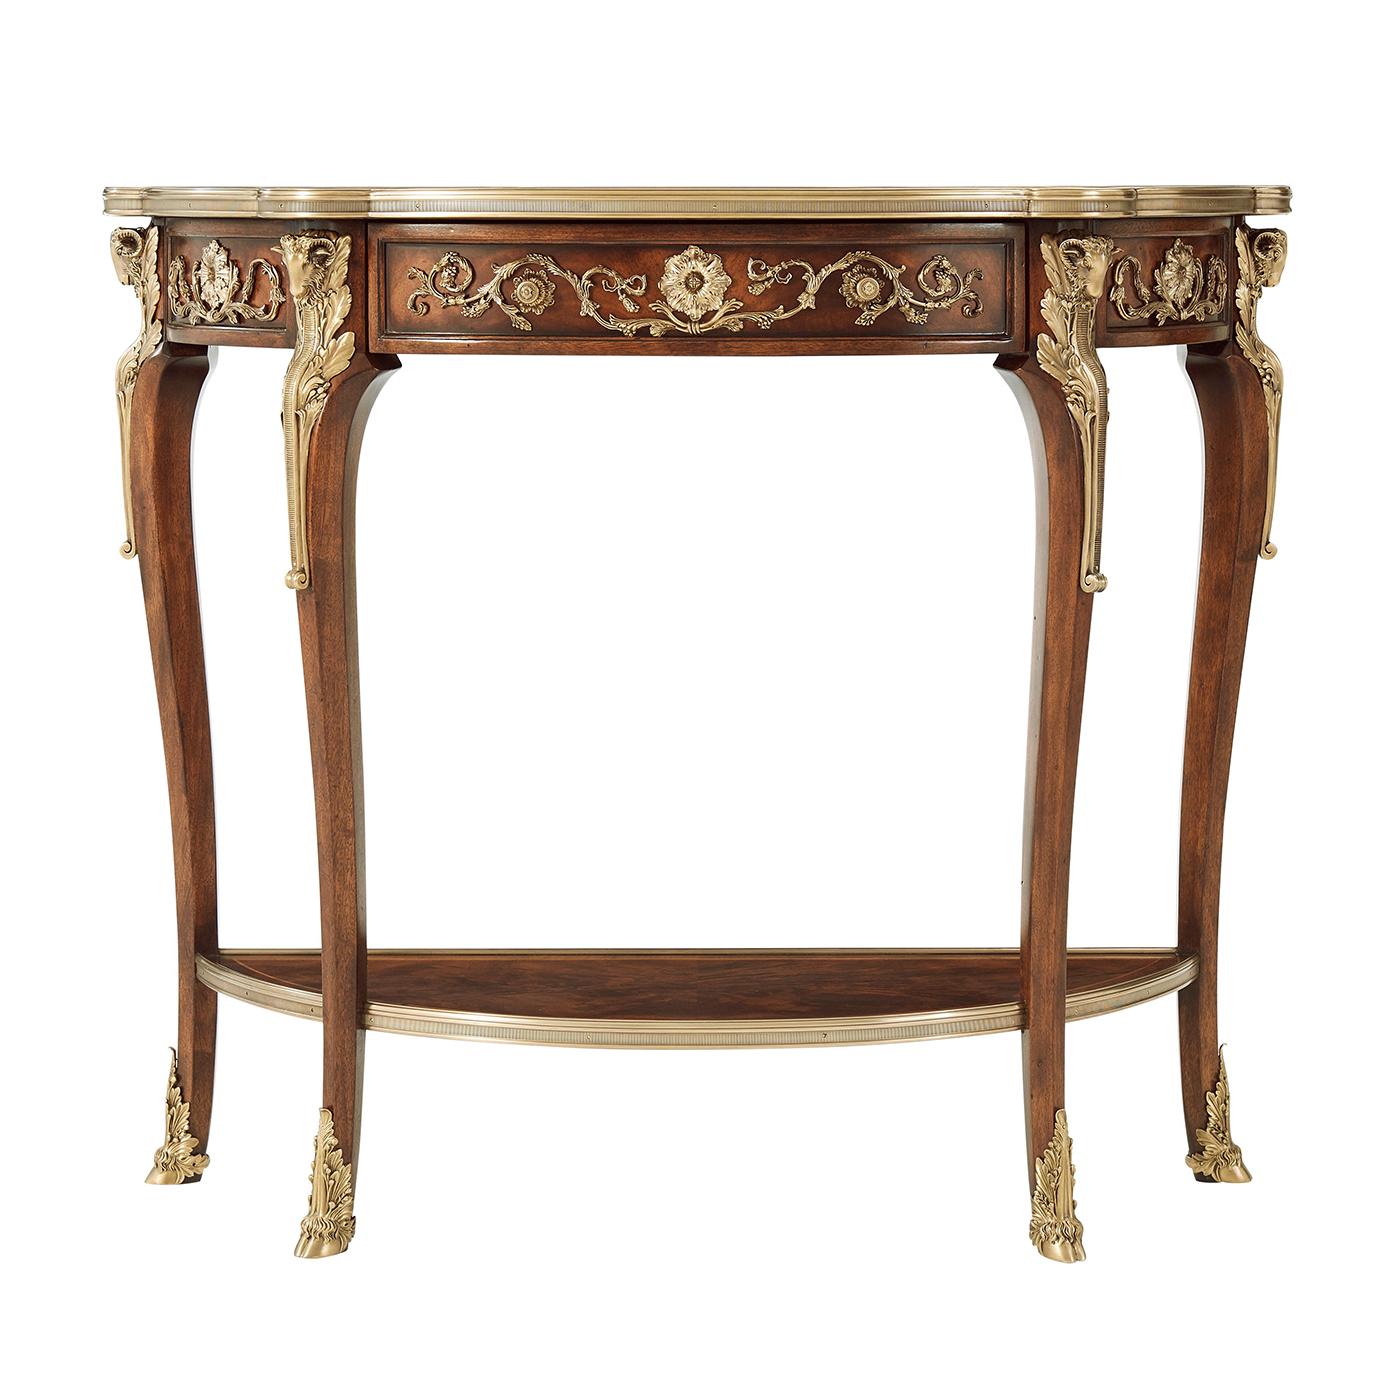 Ein Louis XV-Stil Mahagoni und Palisander gebändert Konsole Tisch mit sehr feinen Messingbeschlägen angewendet, die Messing gebunden oben mit einem Fries Schublade, auf Widderkopf Hauptstadt Cabriole Beine mit Huf Füße durch eine untere Ebene